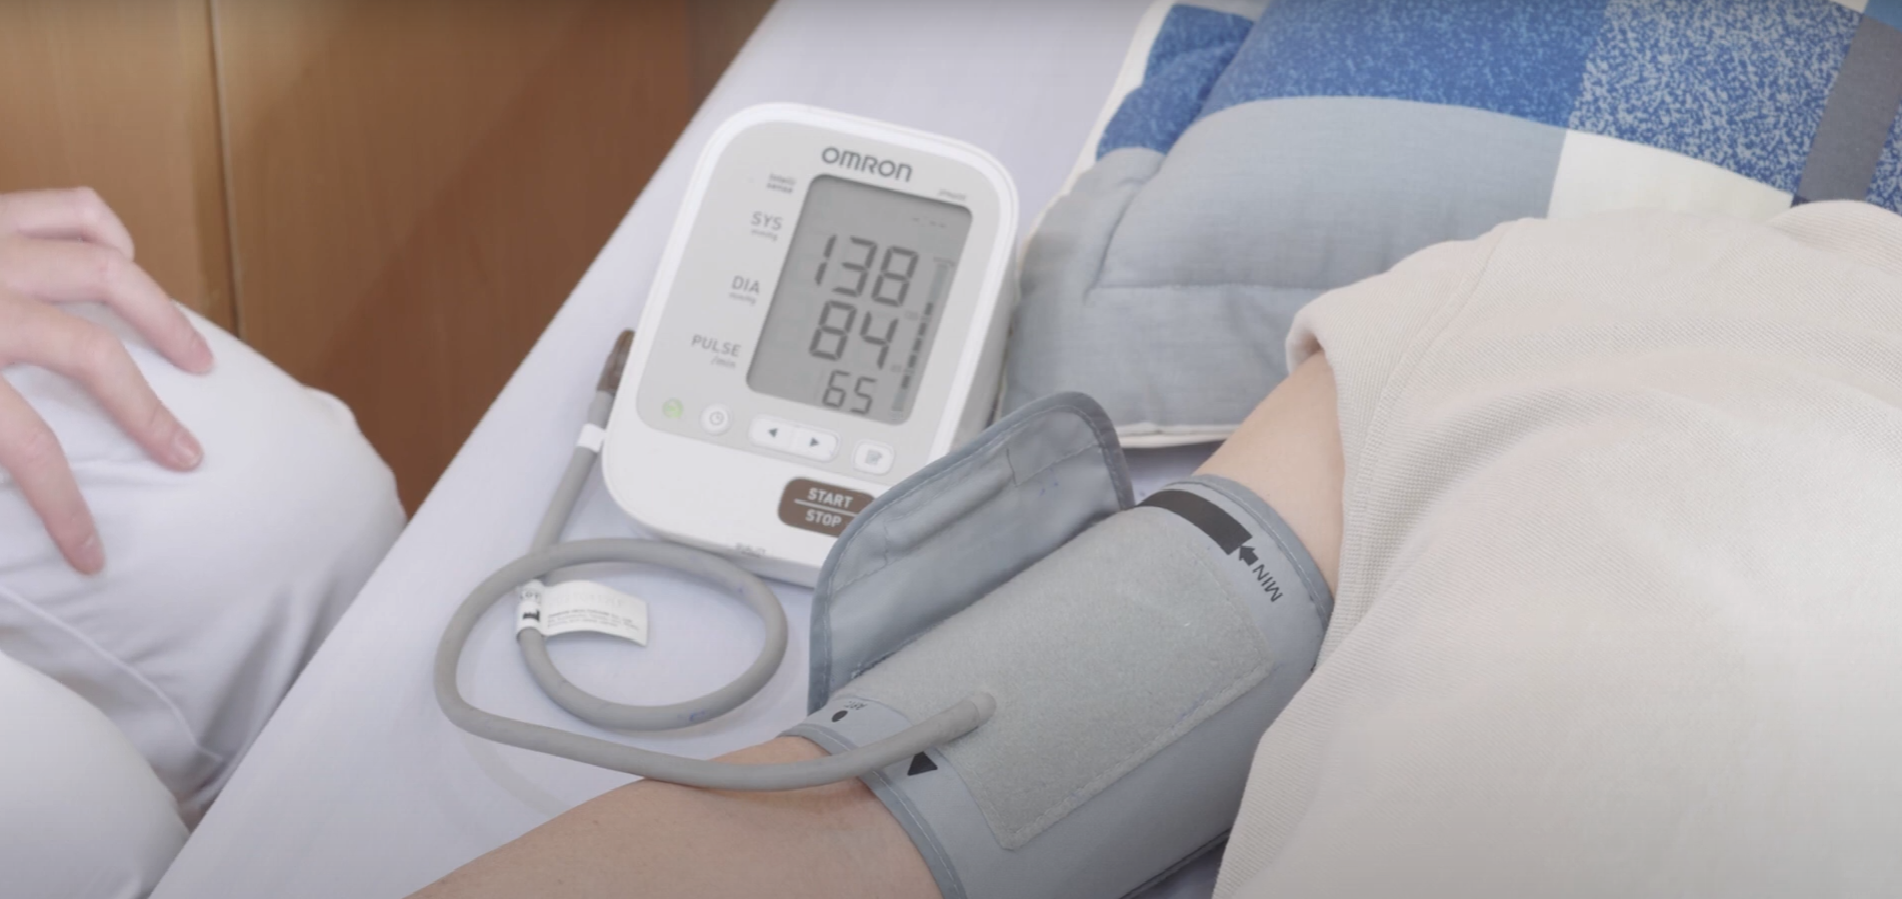 20. Cách đo huyết áp, nhiệt độ, mạch và nhịp thở cho người cao tuổi - Measuring blood pressure, temperature, pulse and respiratory rate for the elderly 